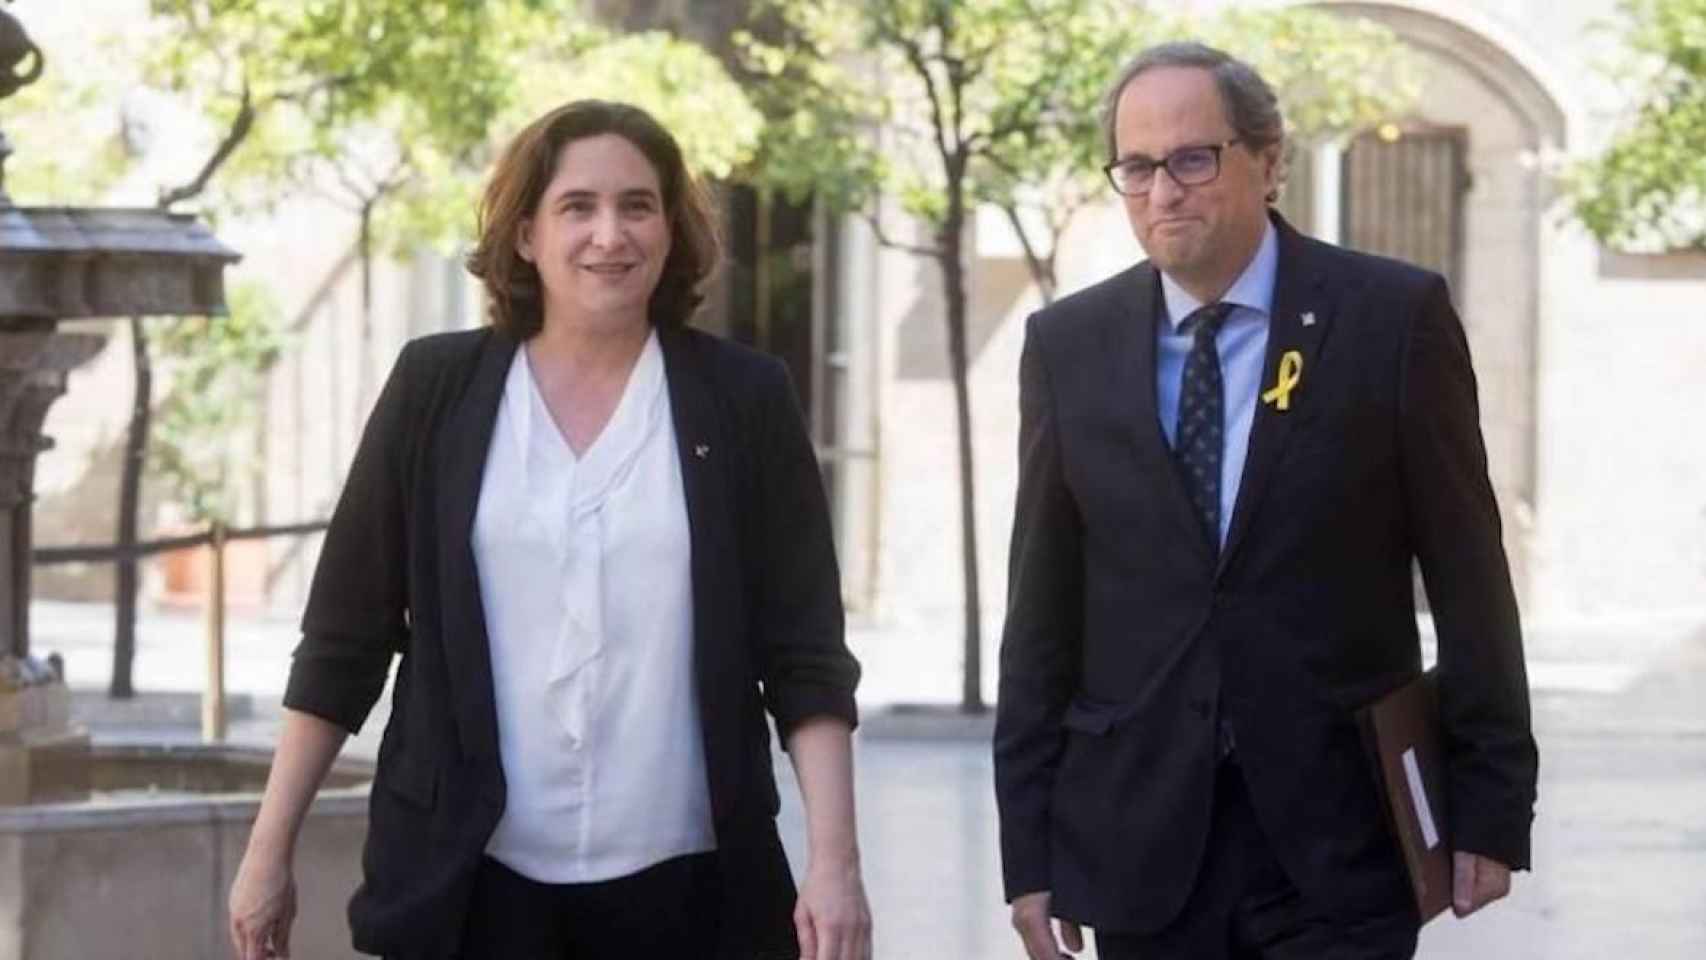 La alcaldesa de Barcelona, Ada Colau, junto al presidente de la Generalitat, Quim Torra, en una imagen de archivo / EFE